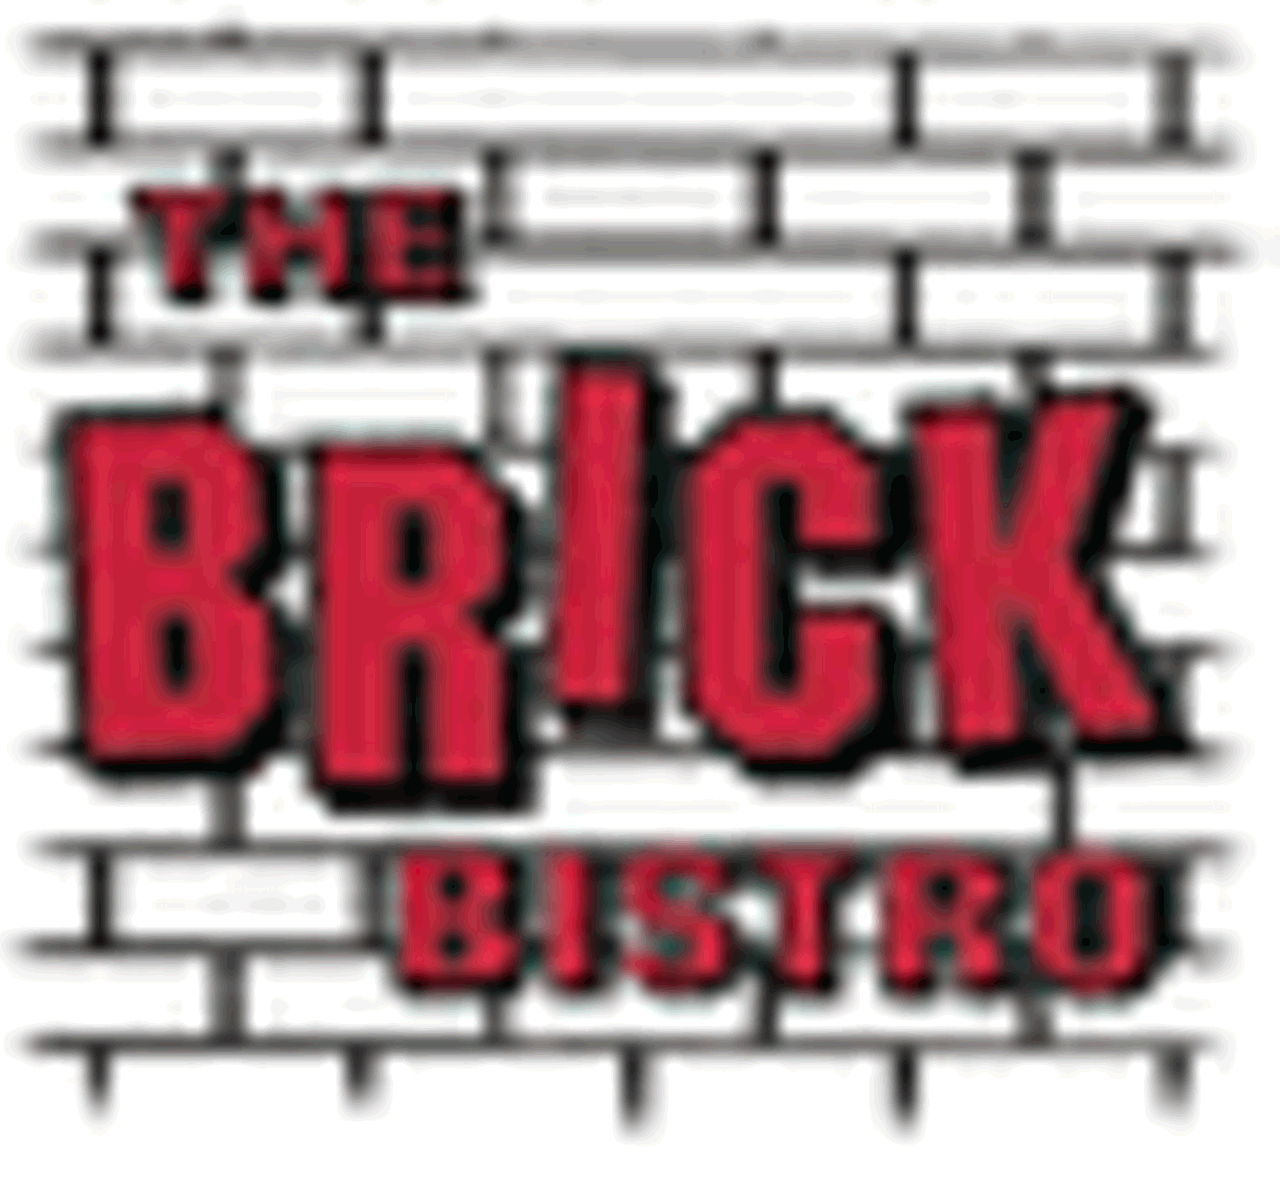 The Brick Bistro